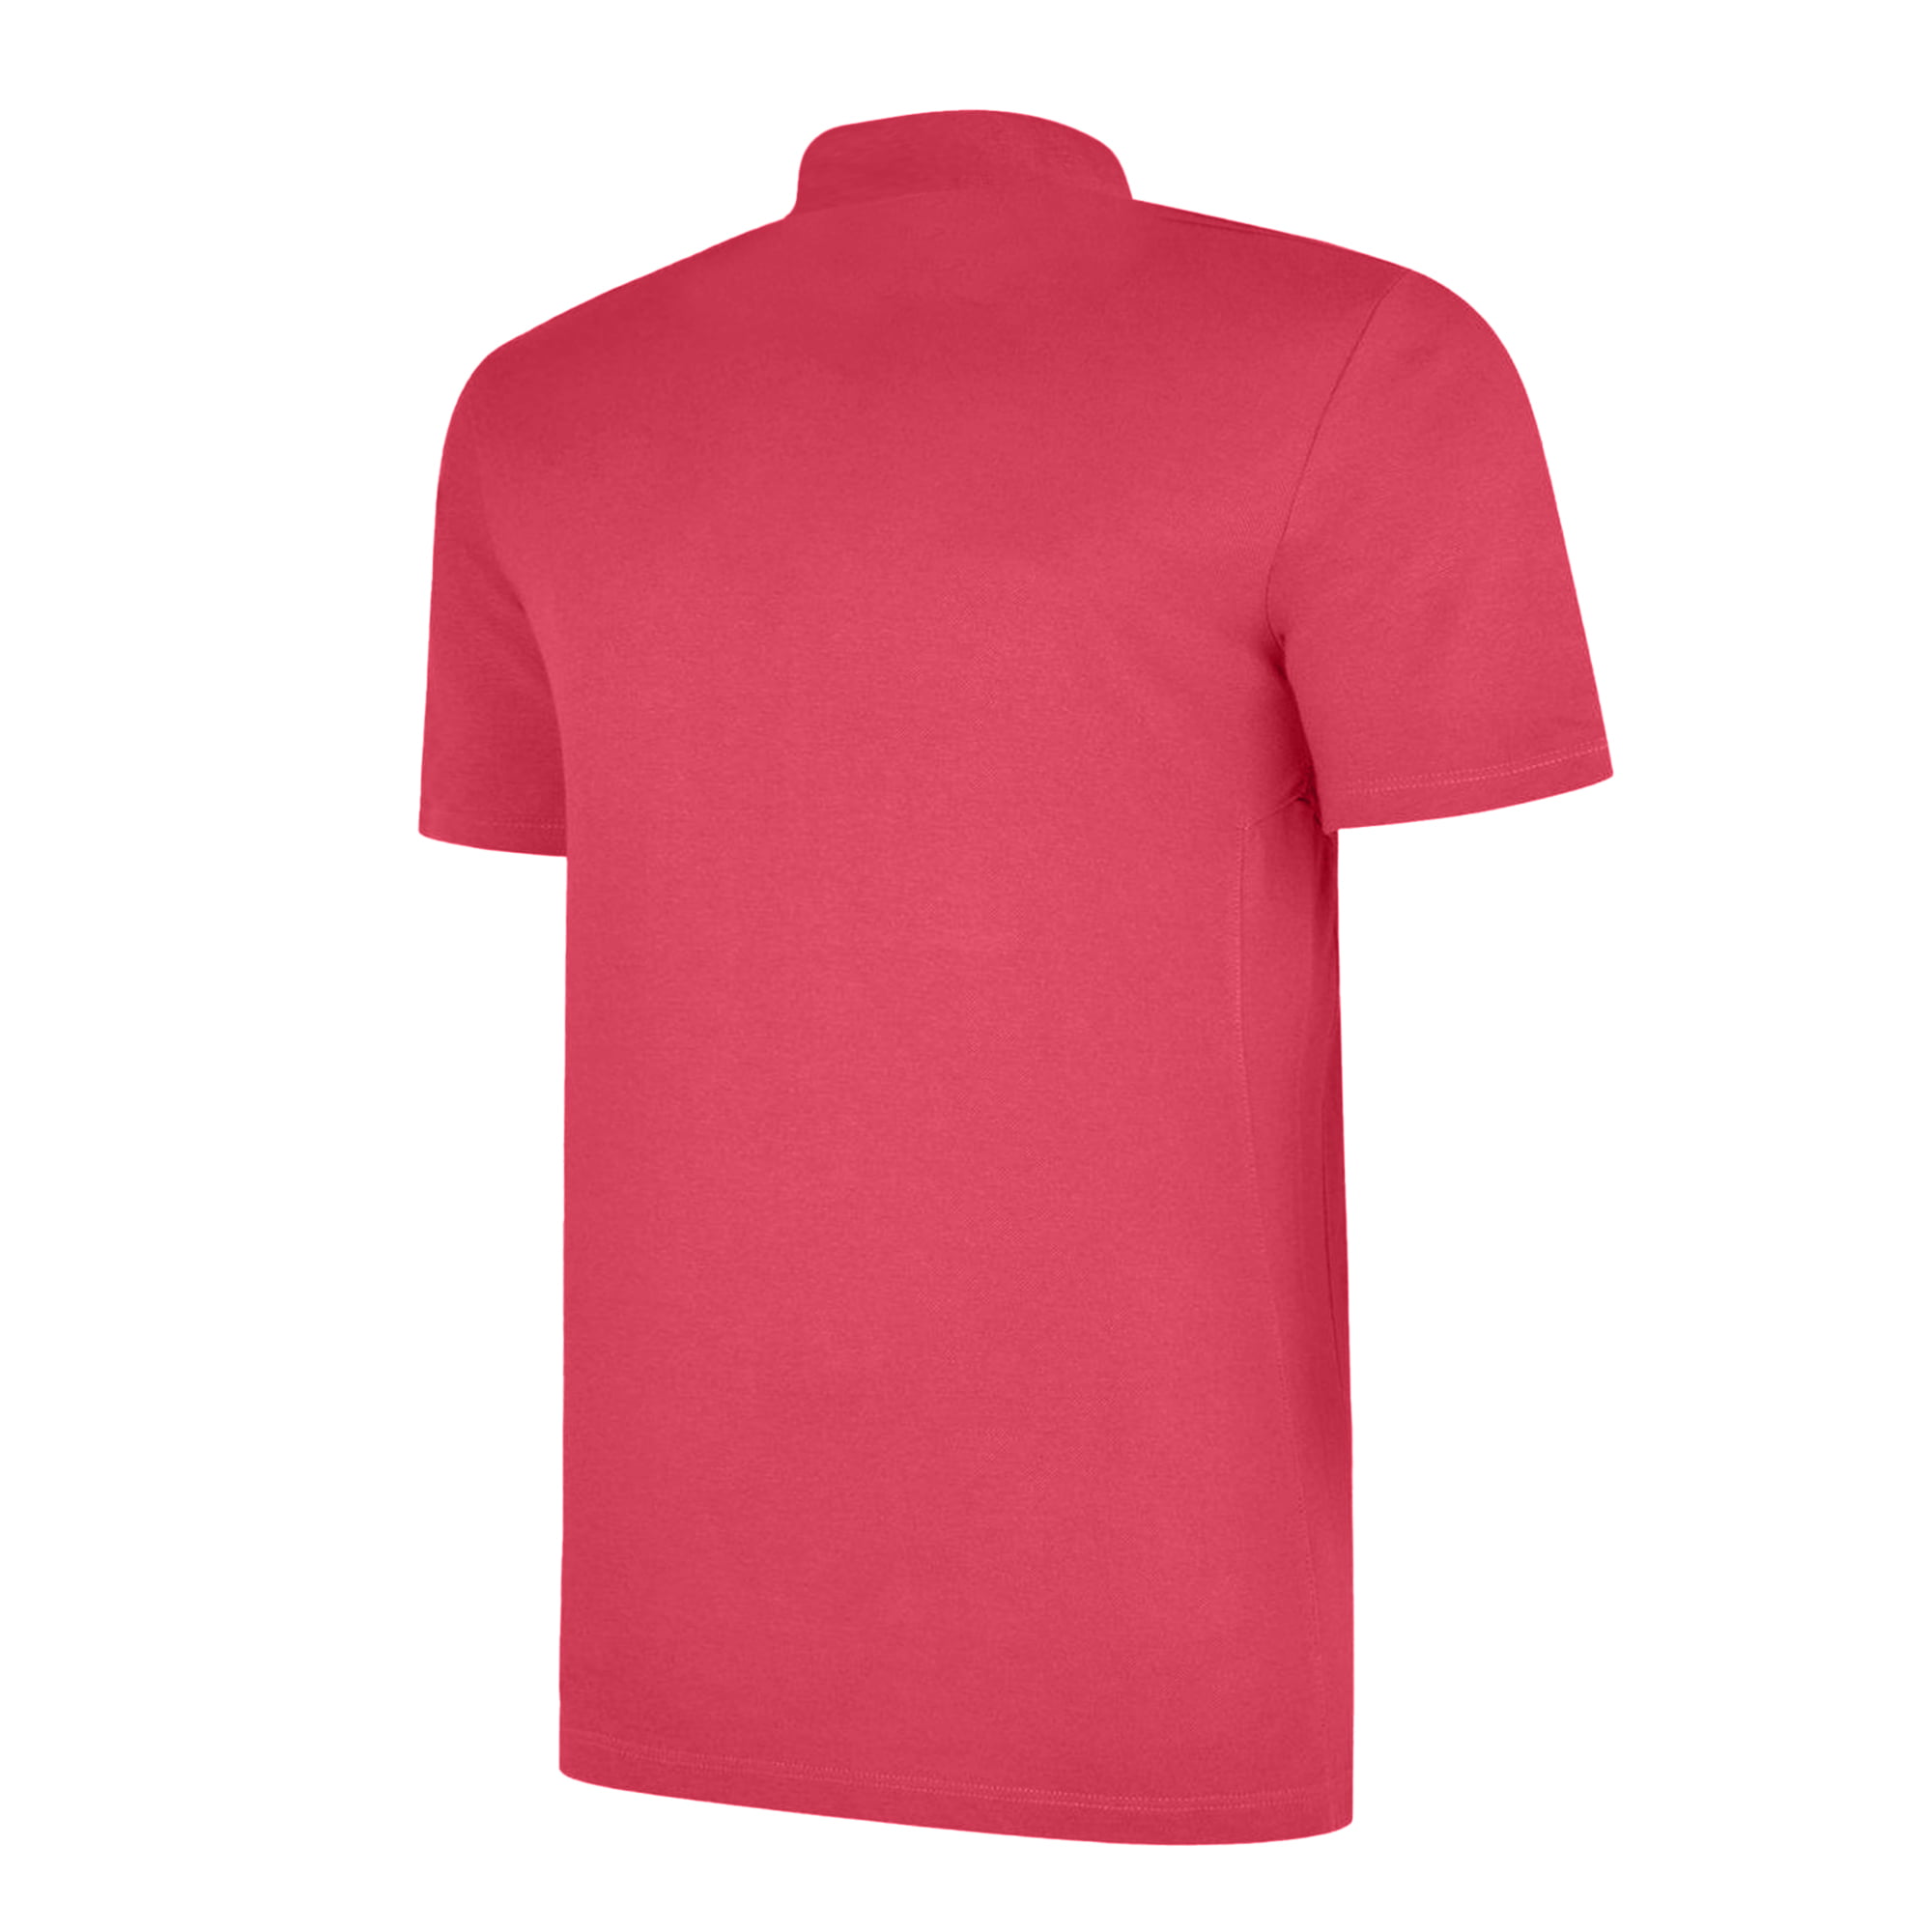 Umbro Mens Essential Polo Shirt - Walmart.com